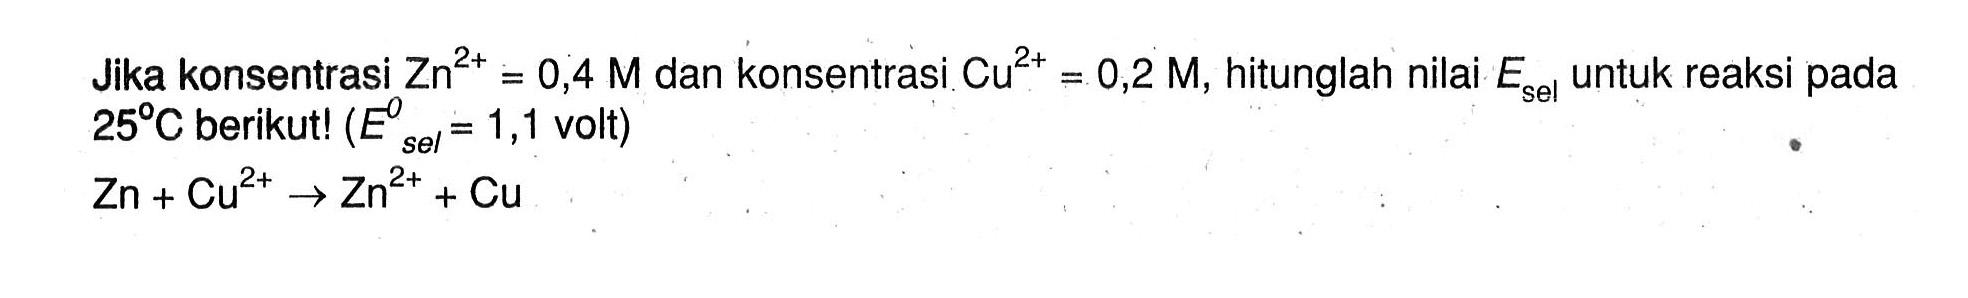 Jika konsentrasi Zn^(2+) = 0,4 M dan konsentrasi Cu^(2+) = 0,2 M, hitunglah nilai Esel untuk reaksi pada 25 C berikut! (E^0 sel = 1,1 volt) Zn + Cu^(2+) -> Zn^(2+) + Cu